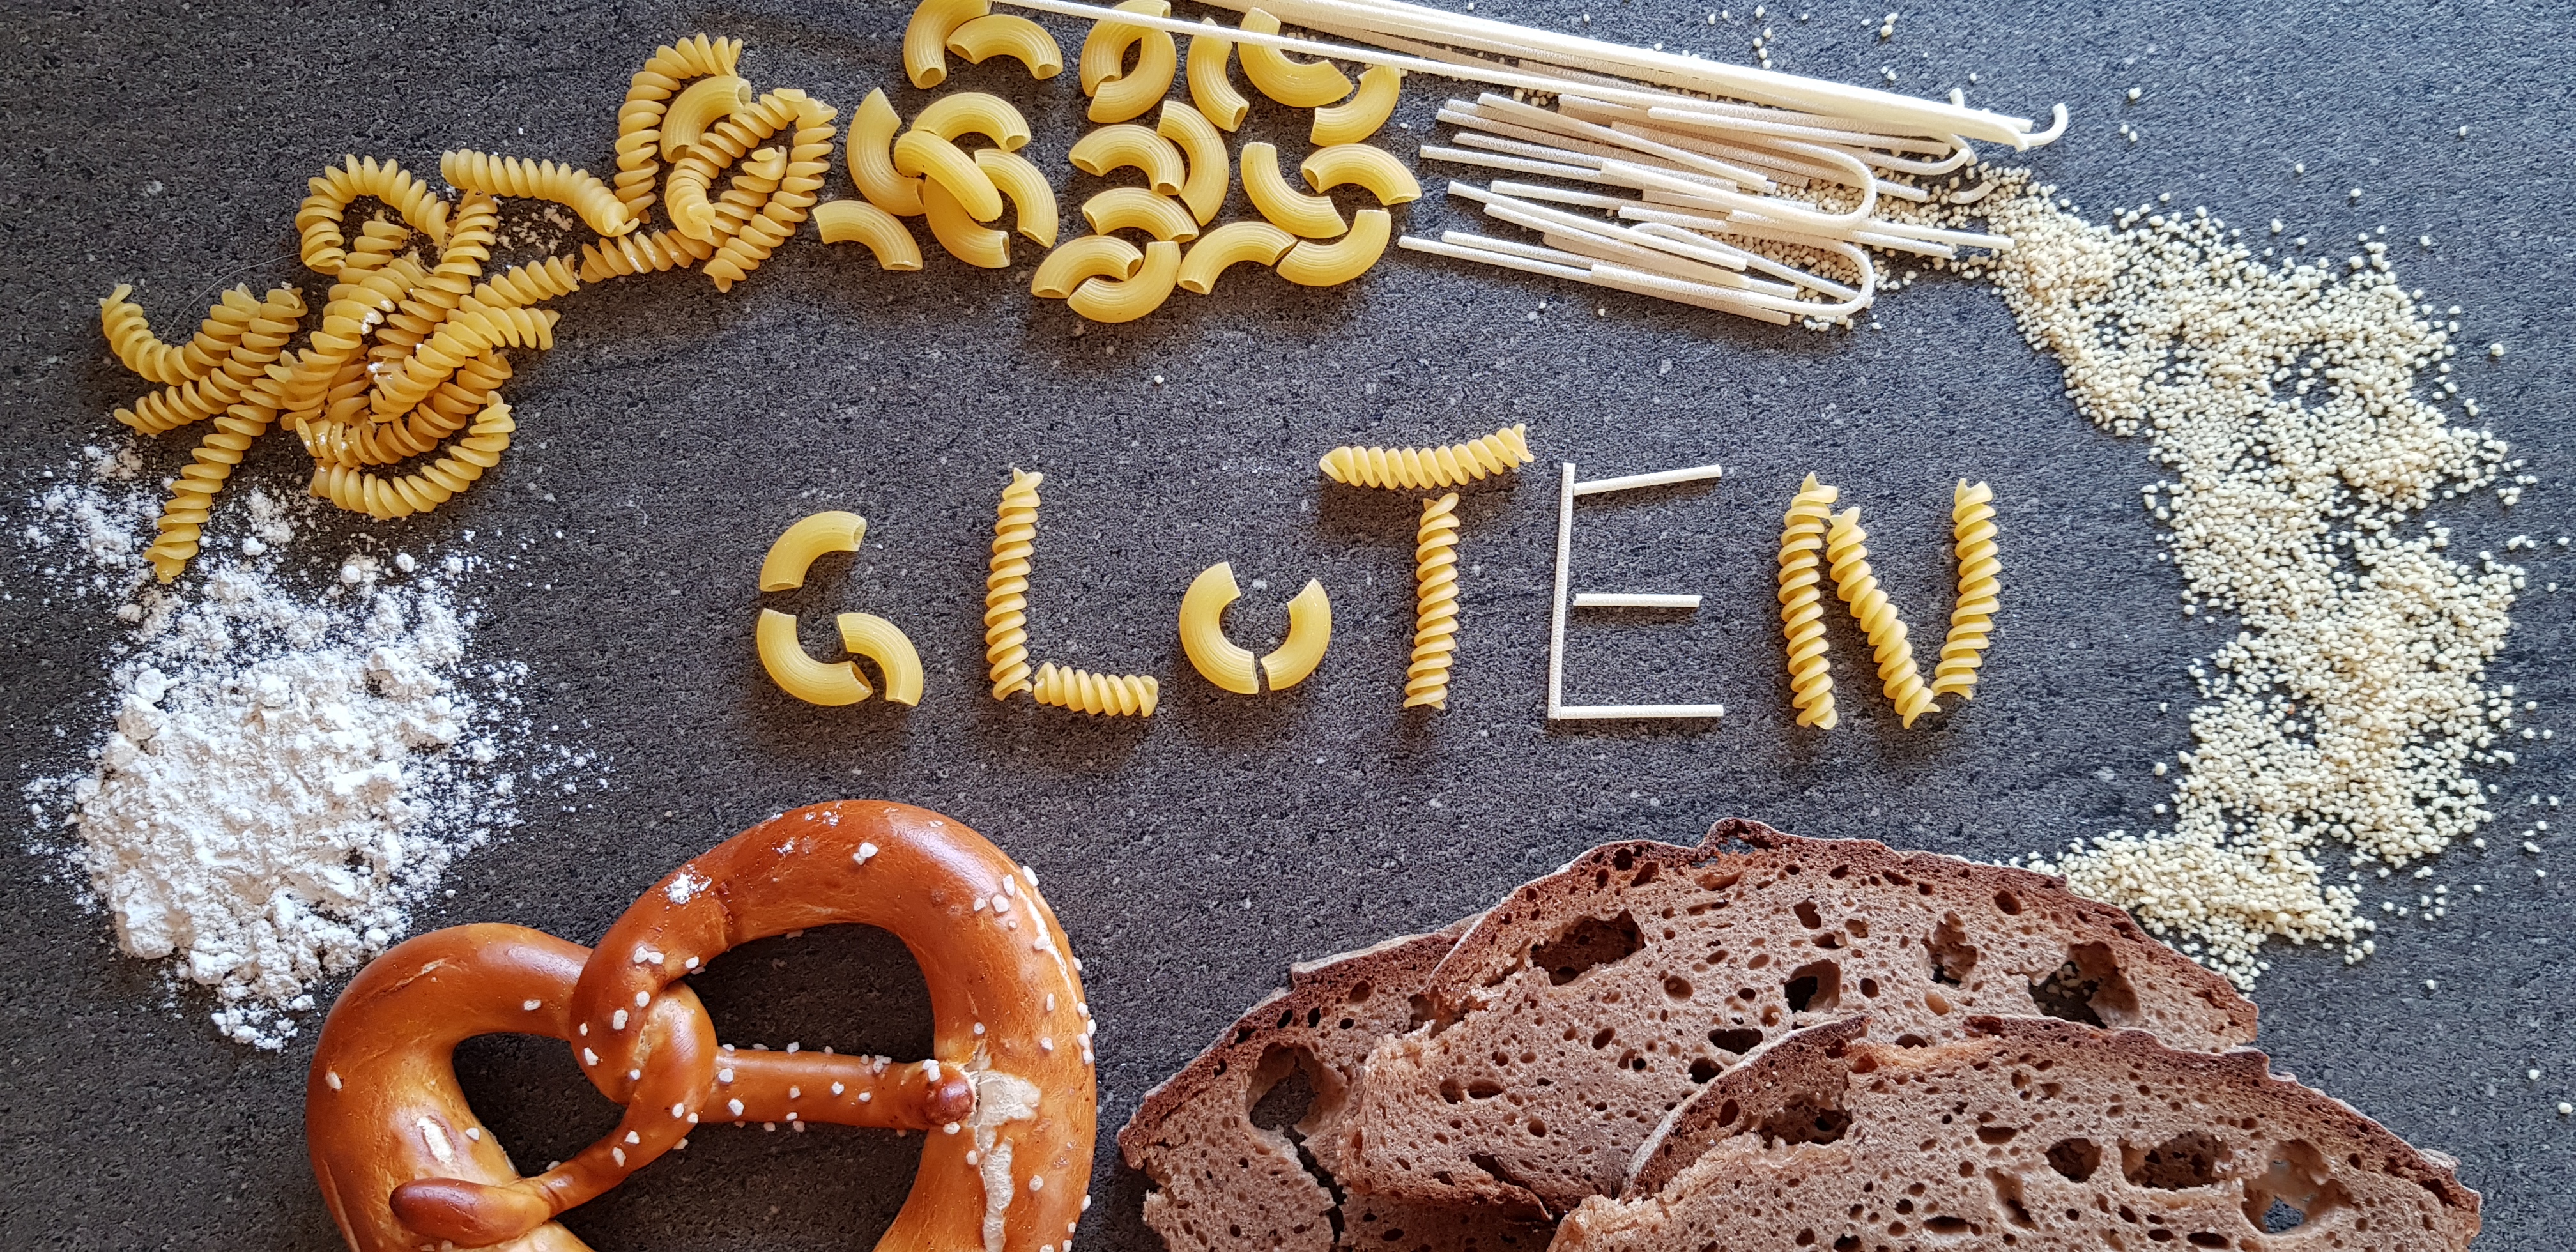 Glutenunverträglichkeit und Zöliakie – alles nur moderner Hype?